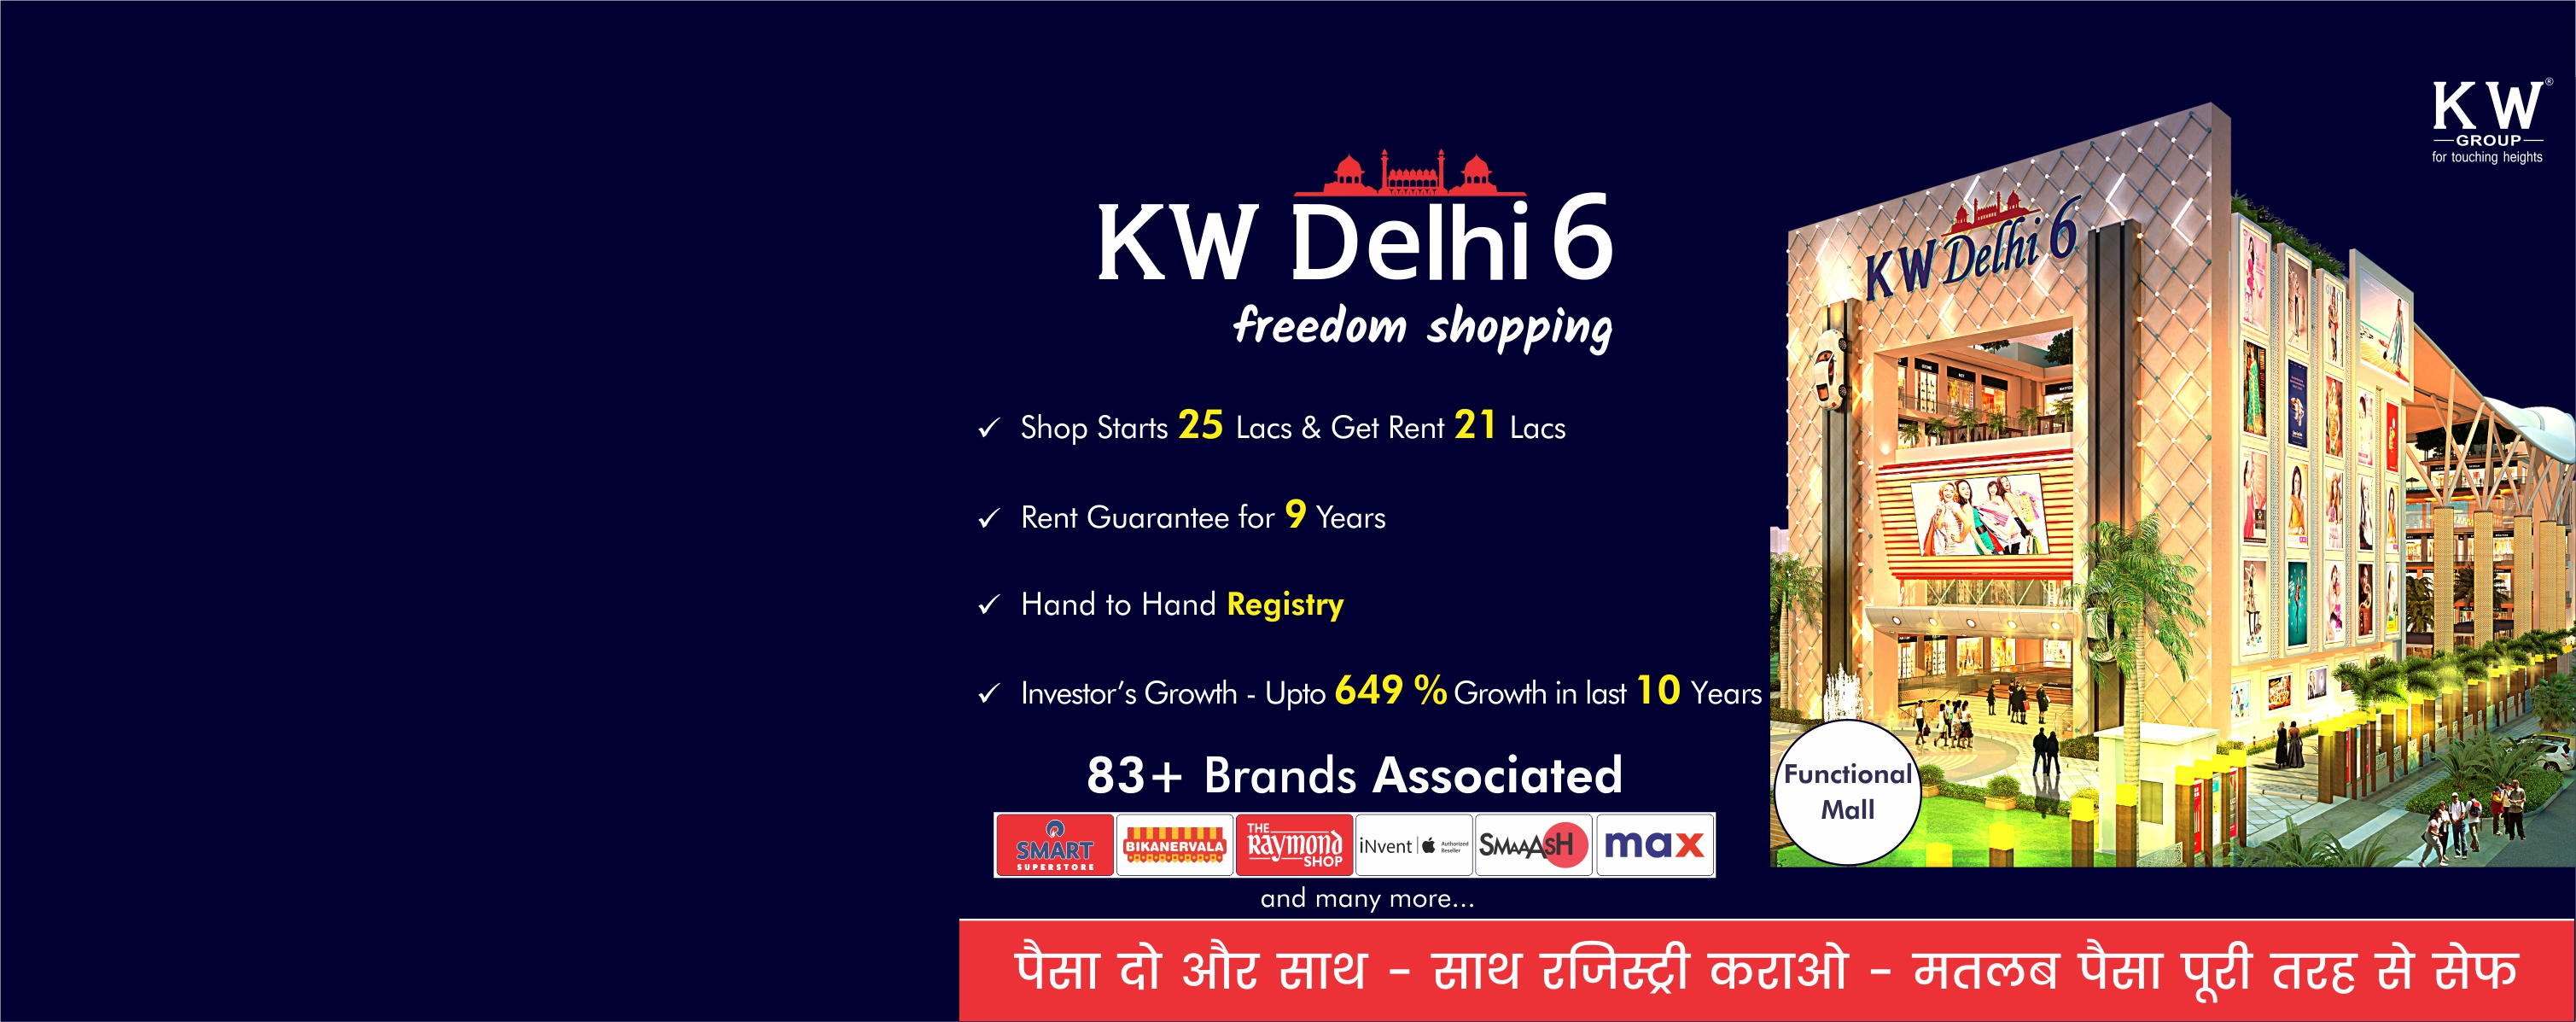 KW Delhi6 Freedom of shopping